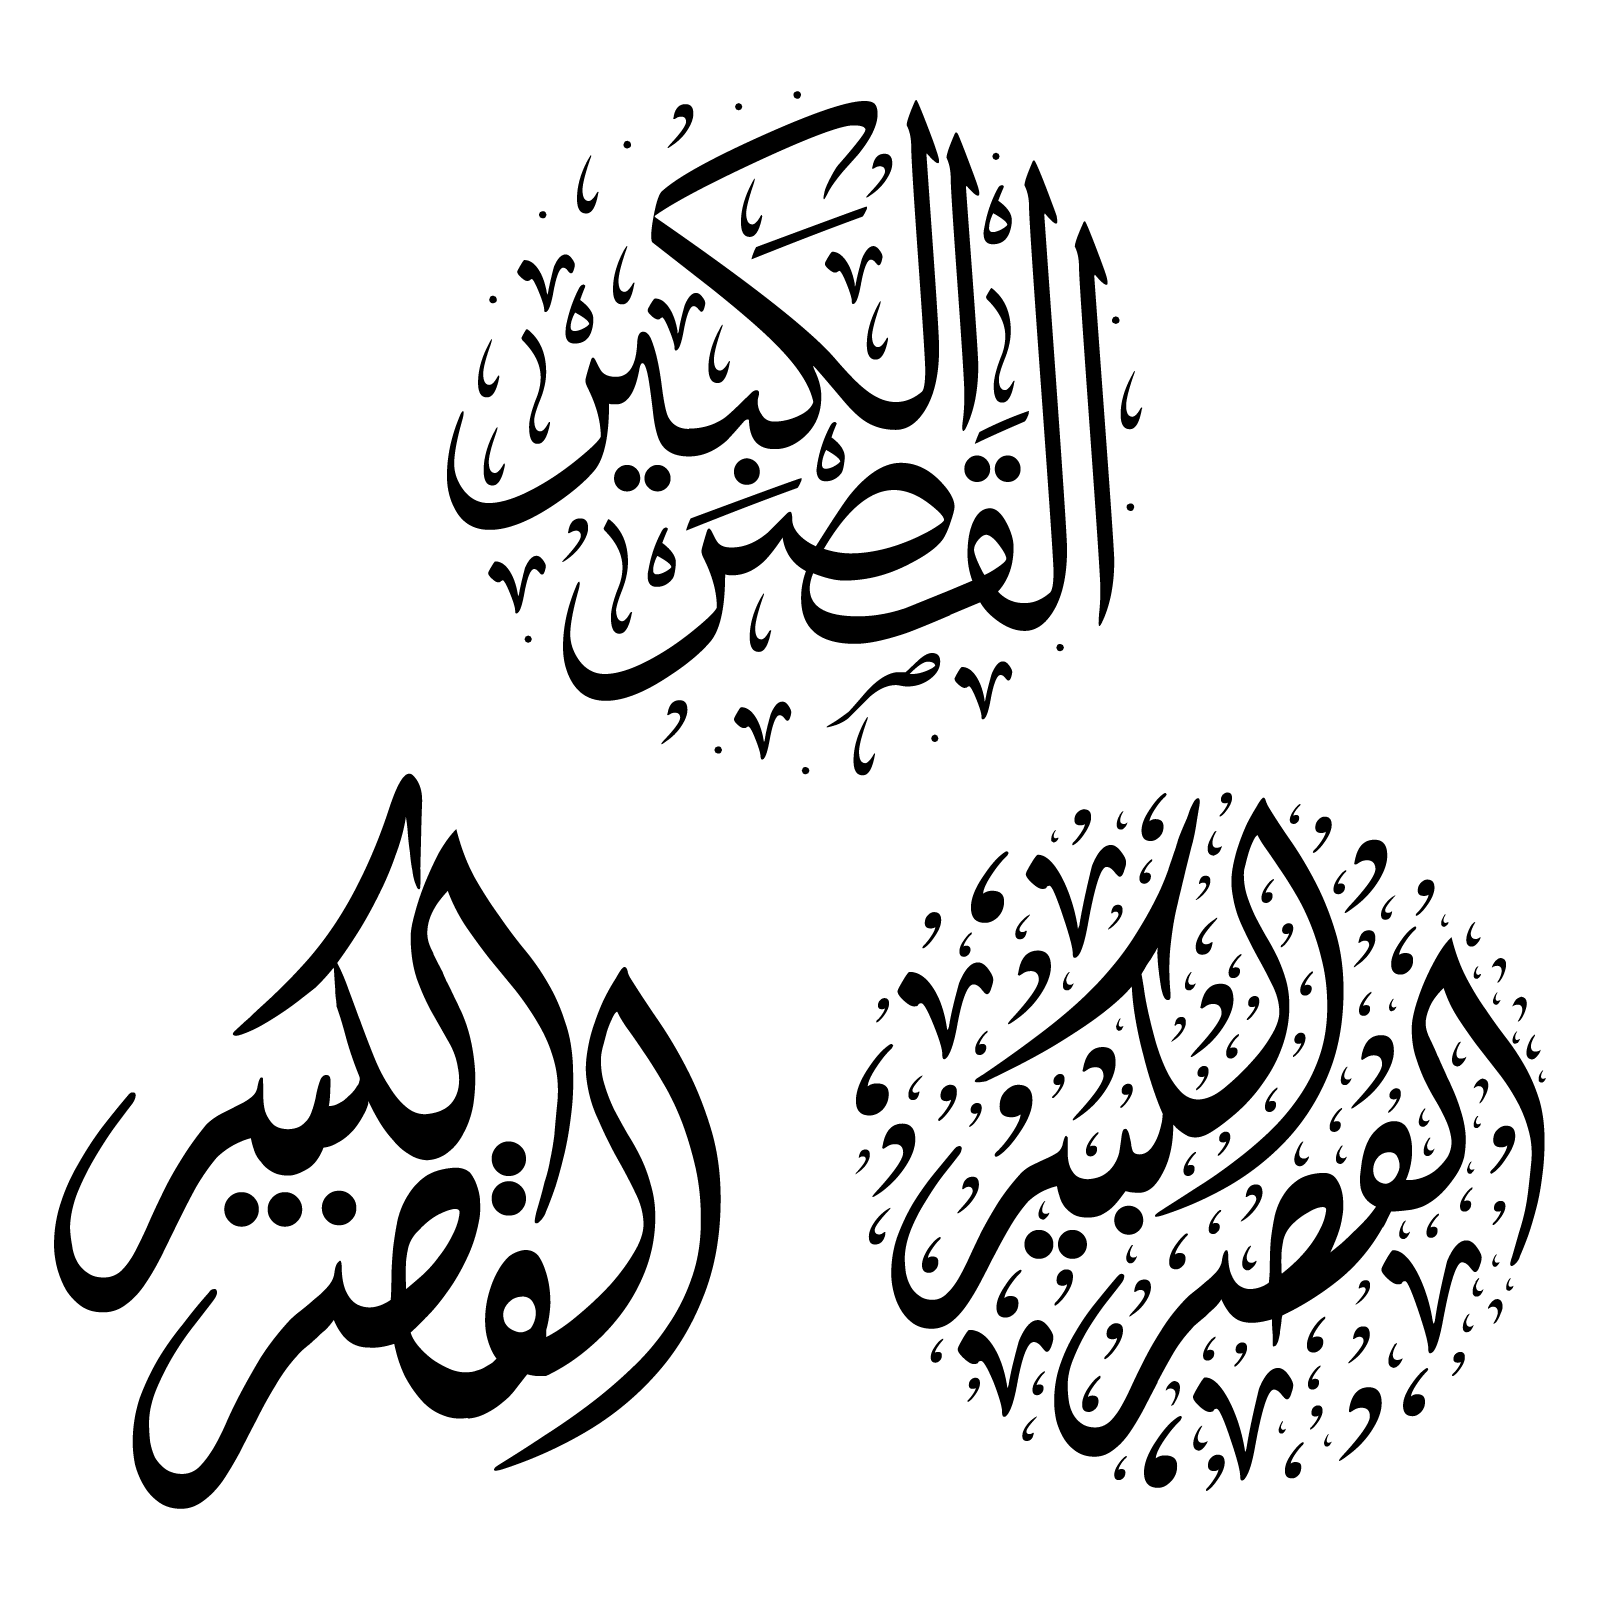 ksar el kebir morocco scripts vector svg eps psd ai pdf png download free #larach #morocco #arab #arabic #islam #maroc #fonts #vector #tetouan #tanger